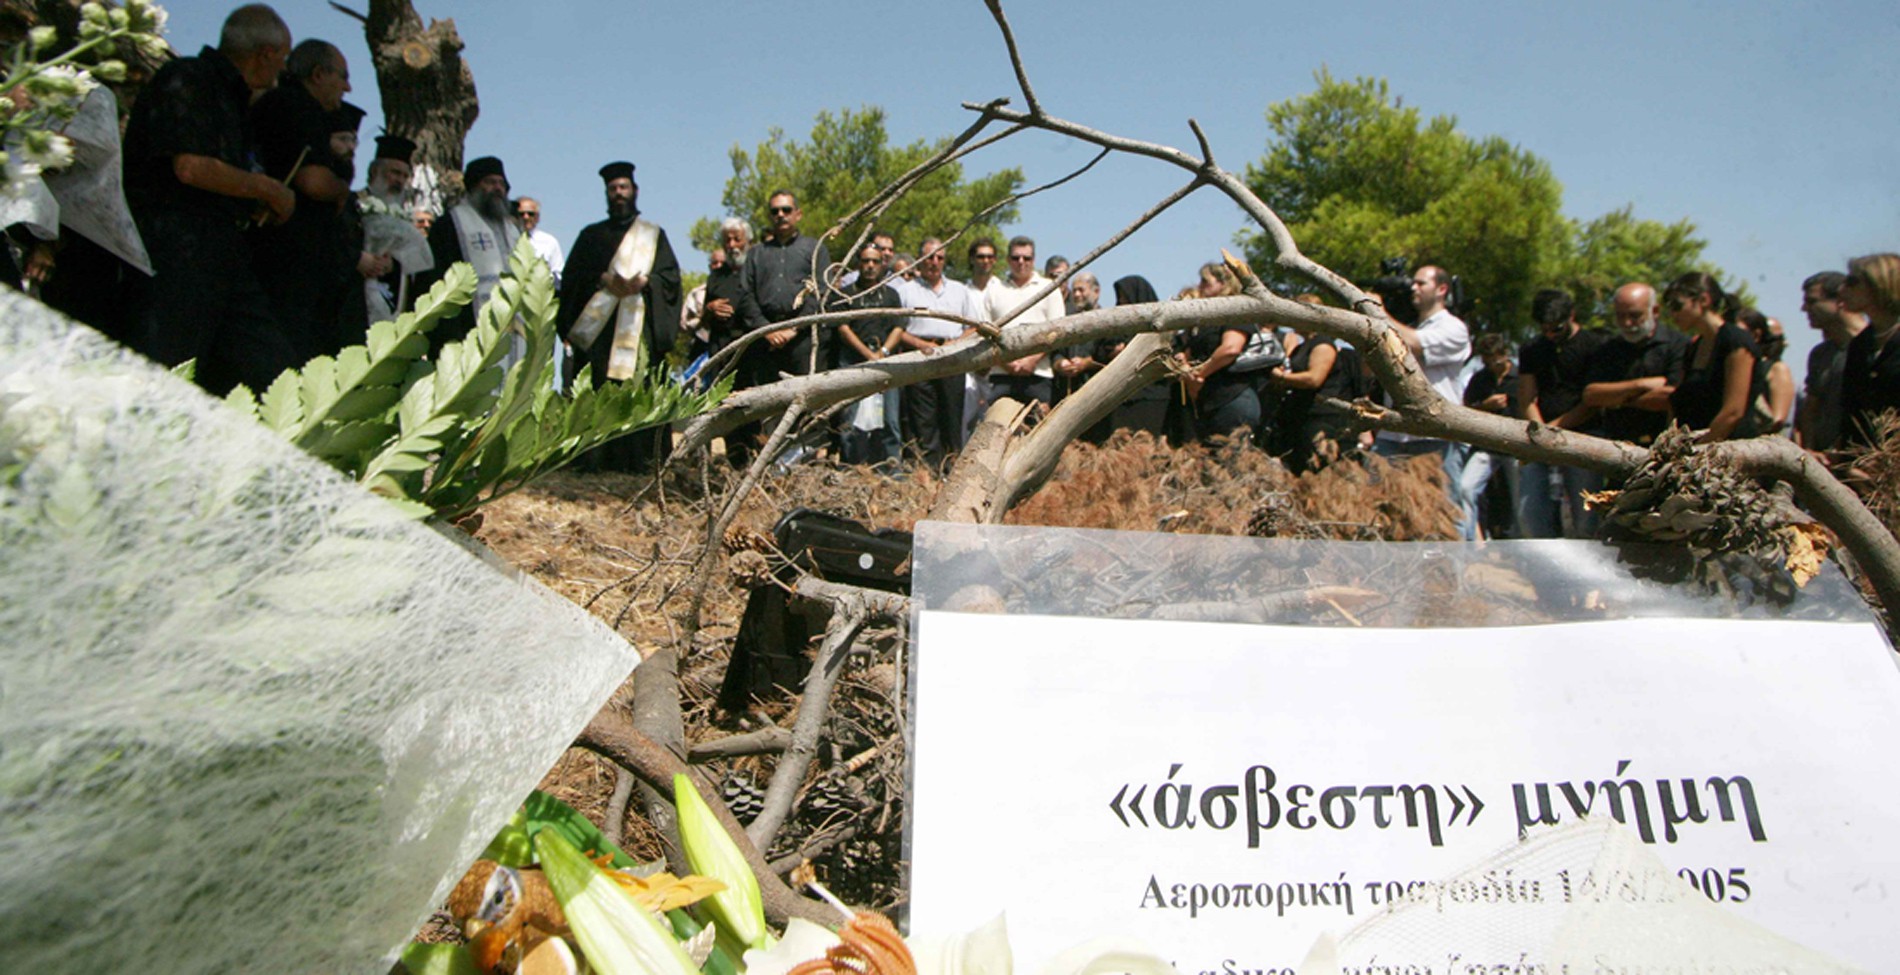 Τα σφάλματα που ευθύνονται για επτά περιπτώσεις αεροπορικών δυστυχημάτων στην Ελλάδα